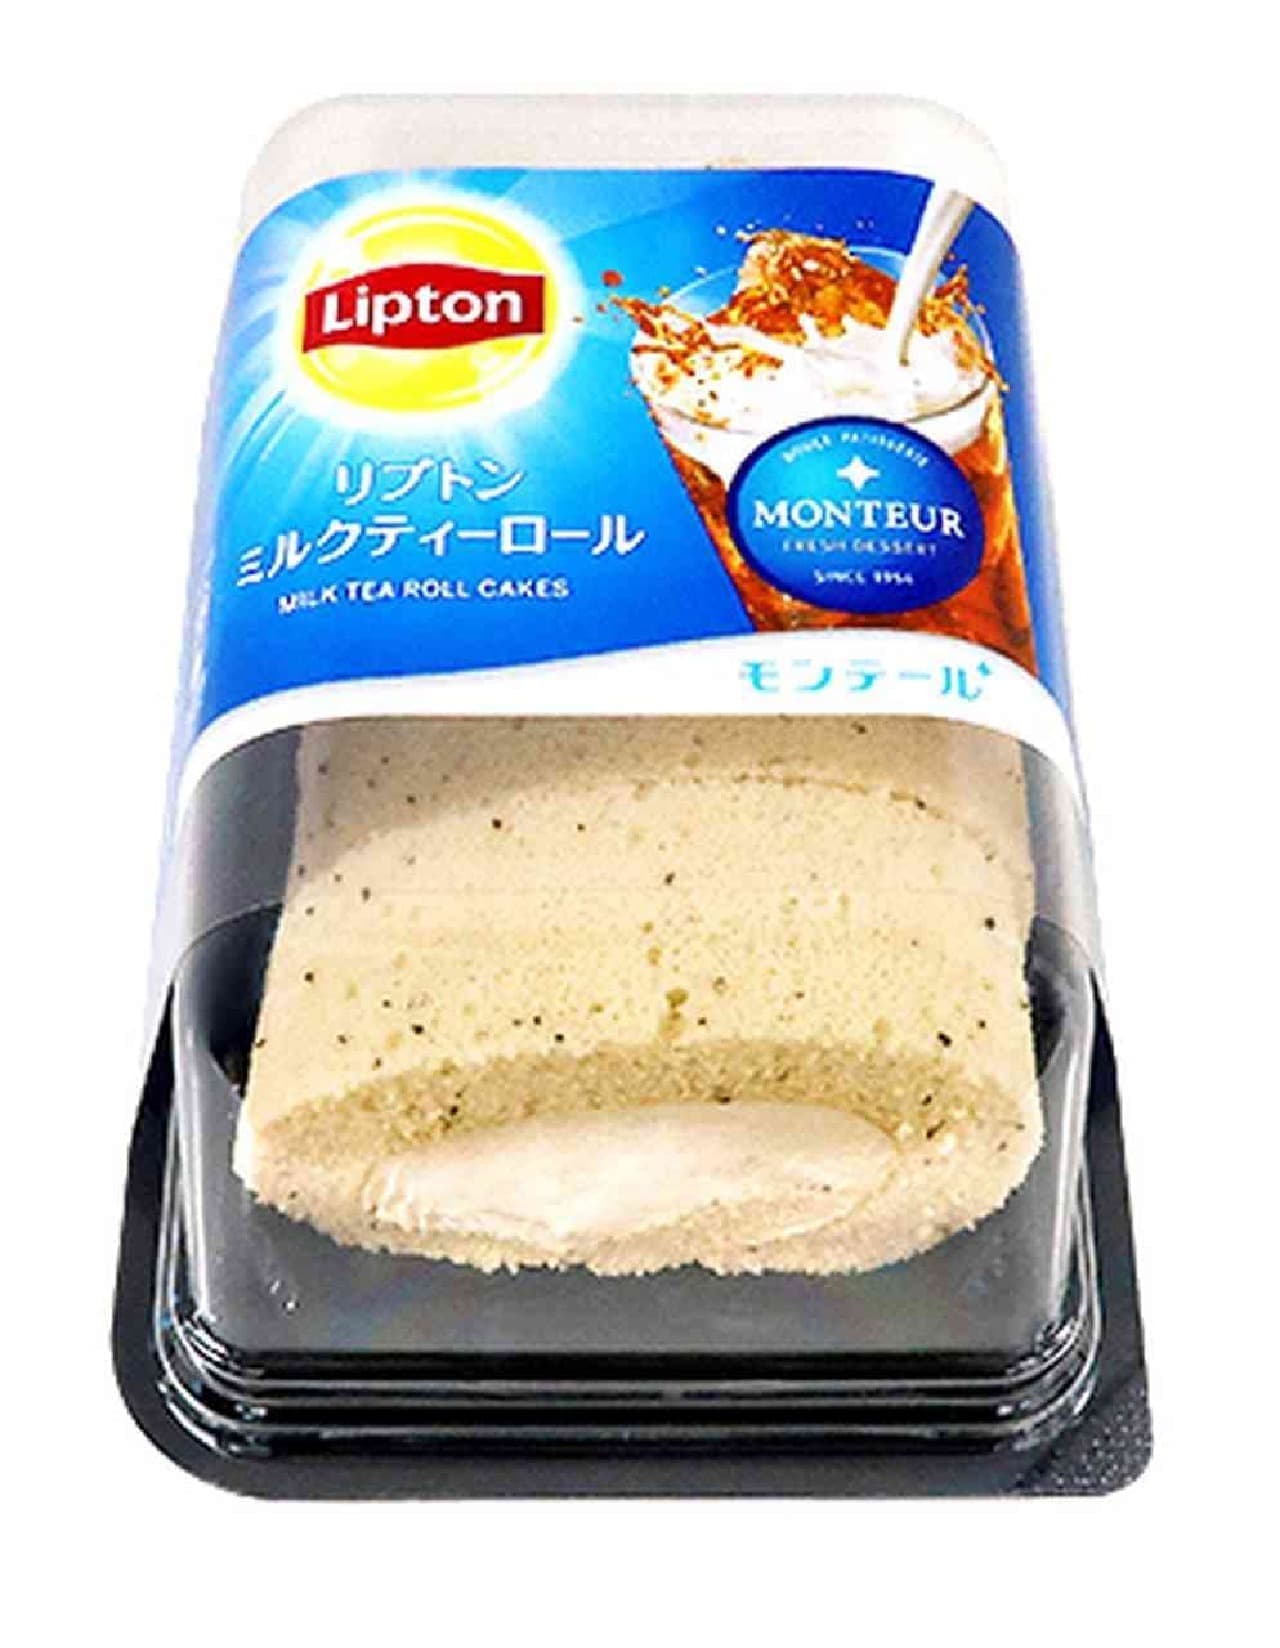 Lipton x Montale "4P Lipton Milk Tea Roll